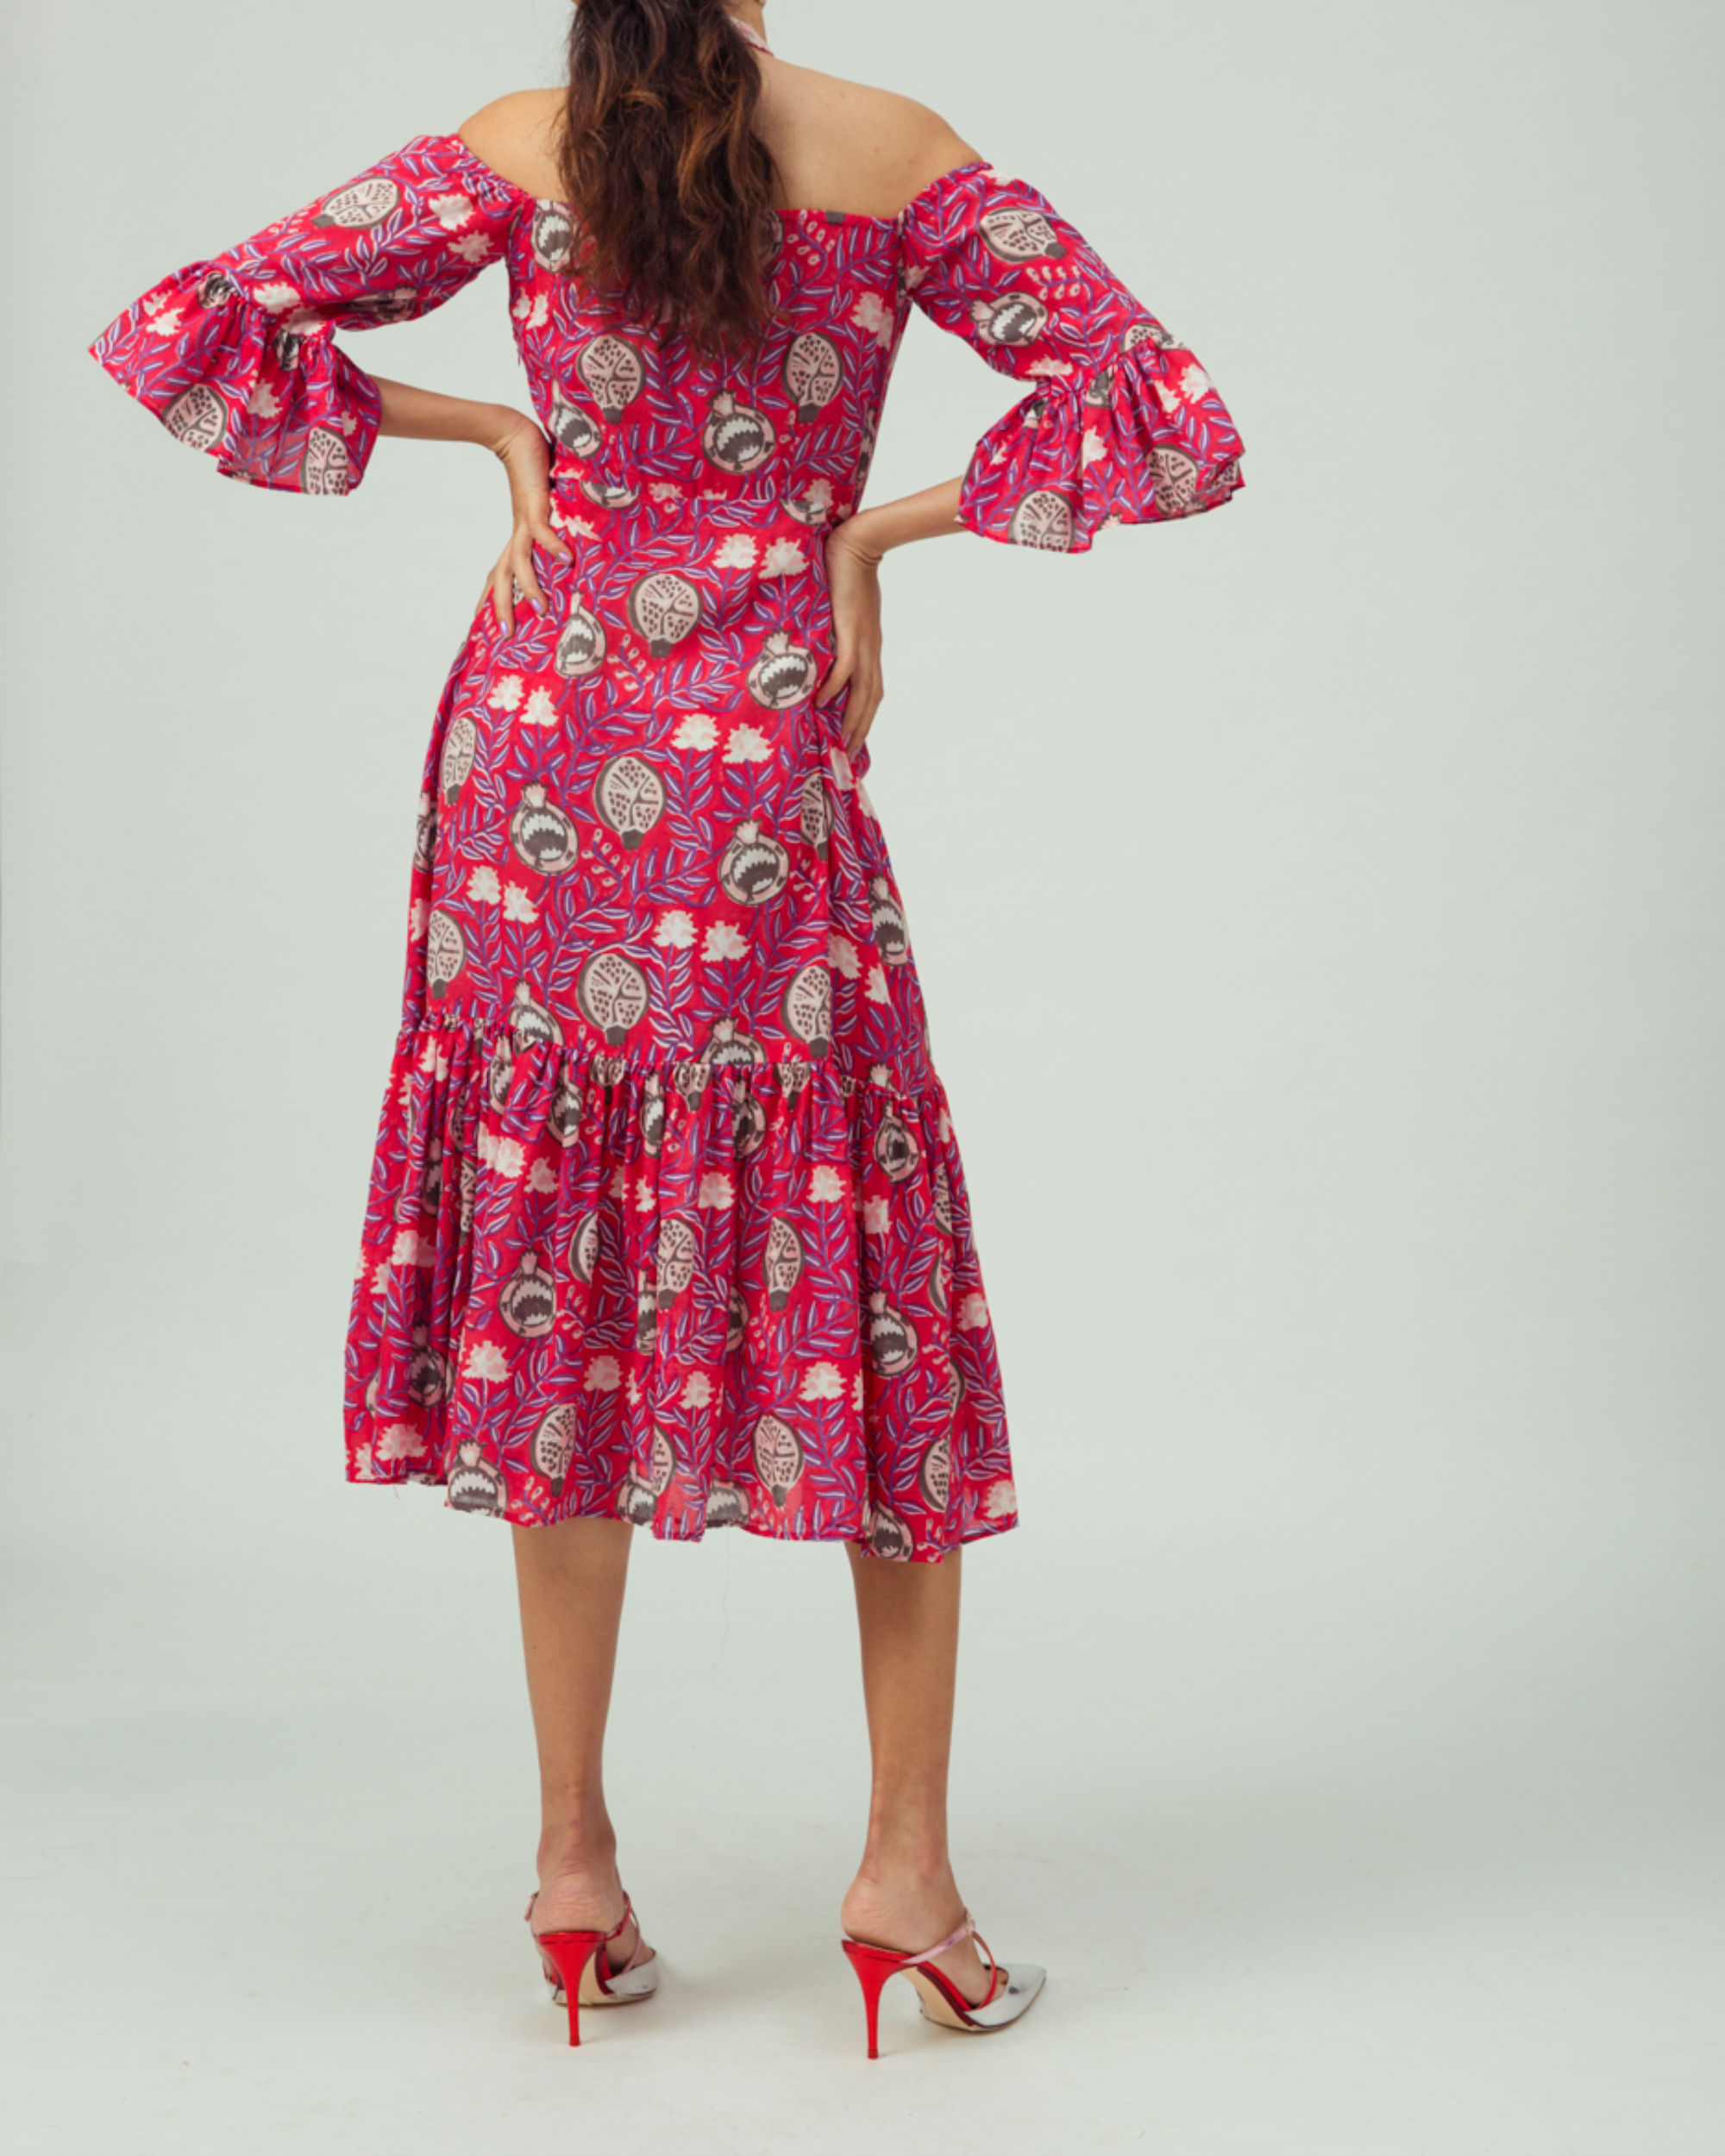 Pomegranate evening dress by Jodi | The Secret Label